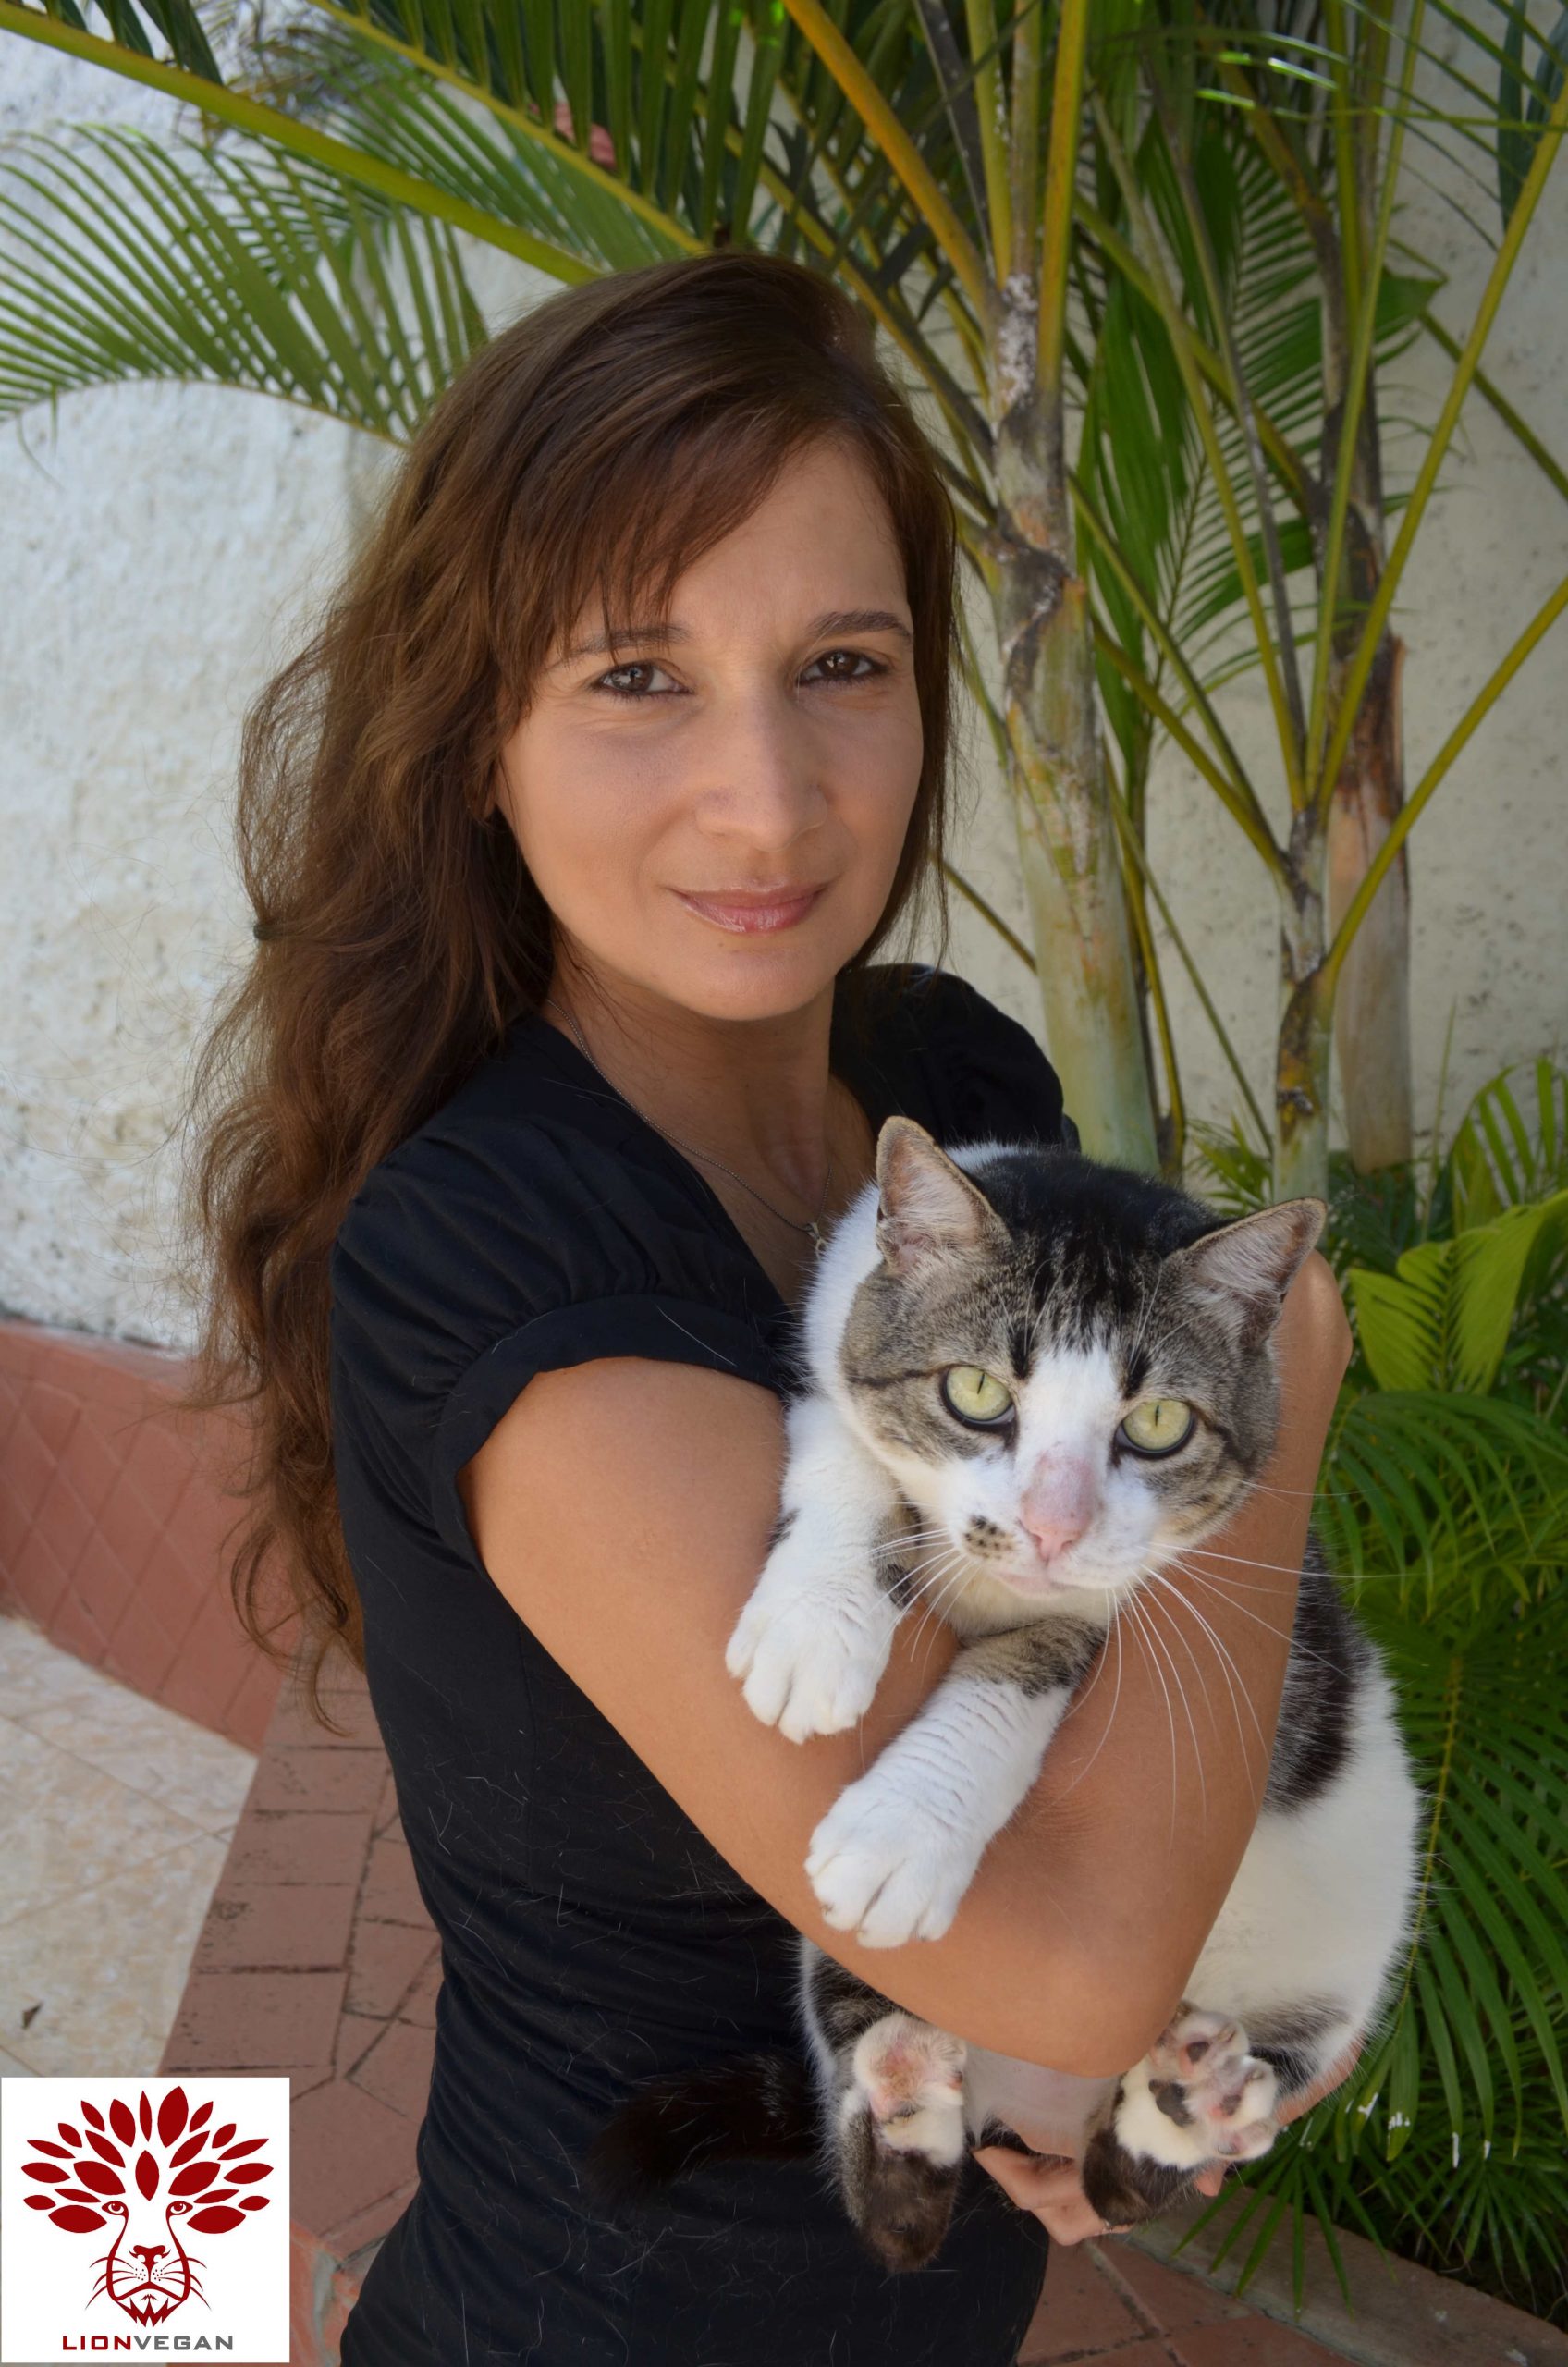 O Blog Katia Vegana aborda sobre Veganismo e Direitos dos Animais